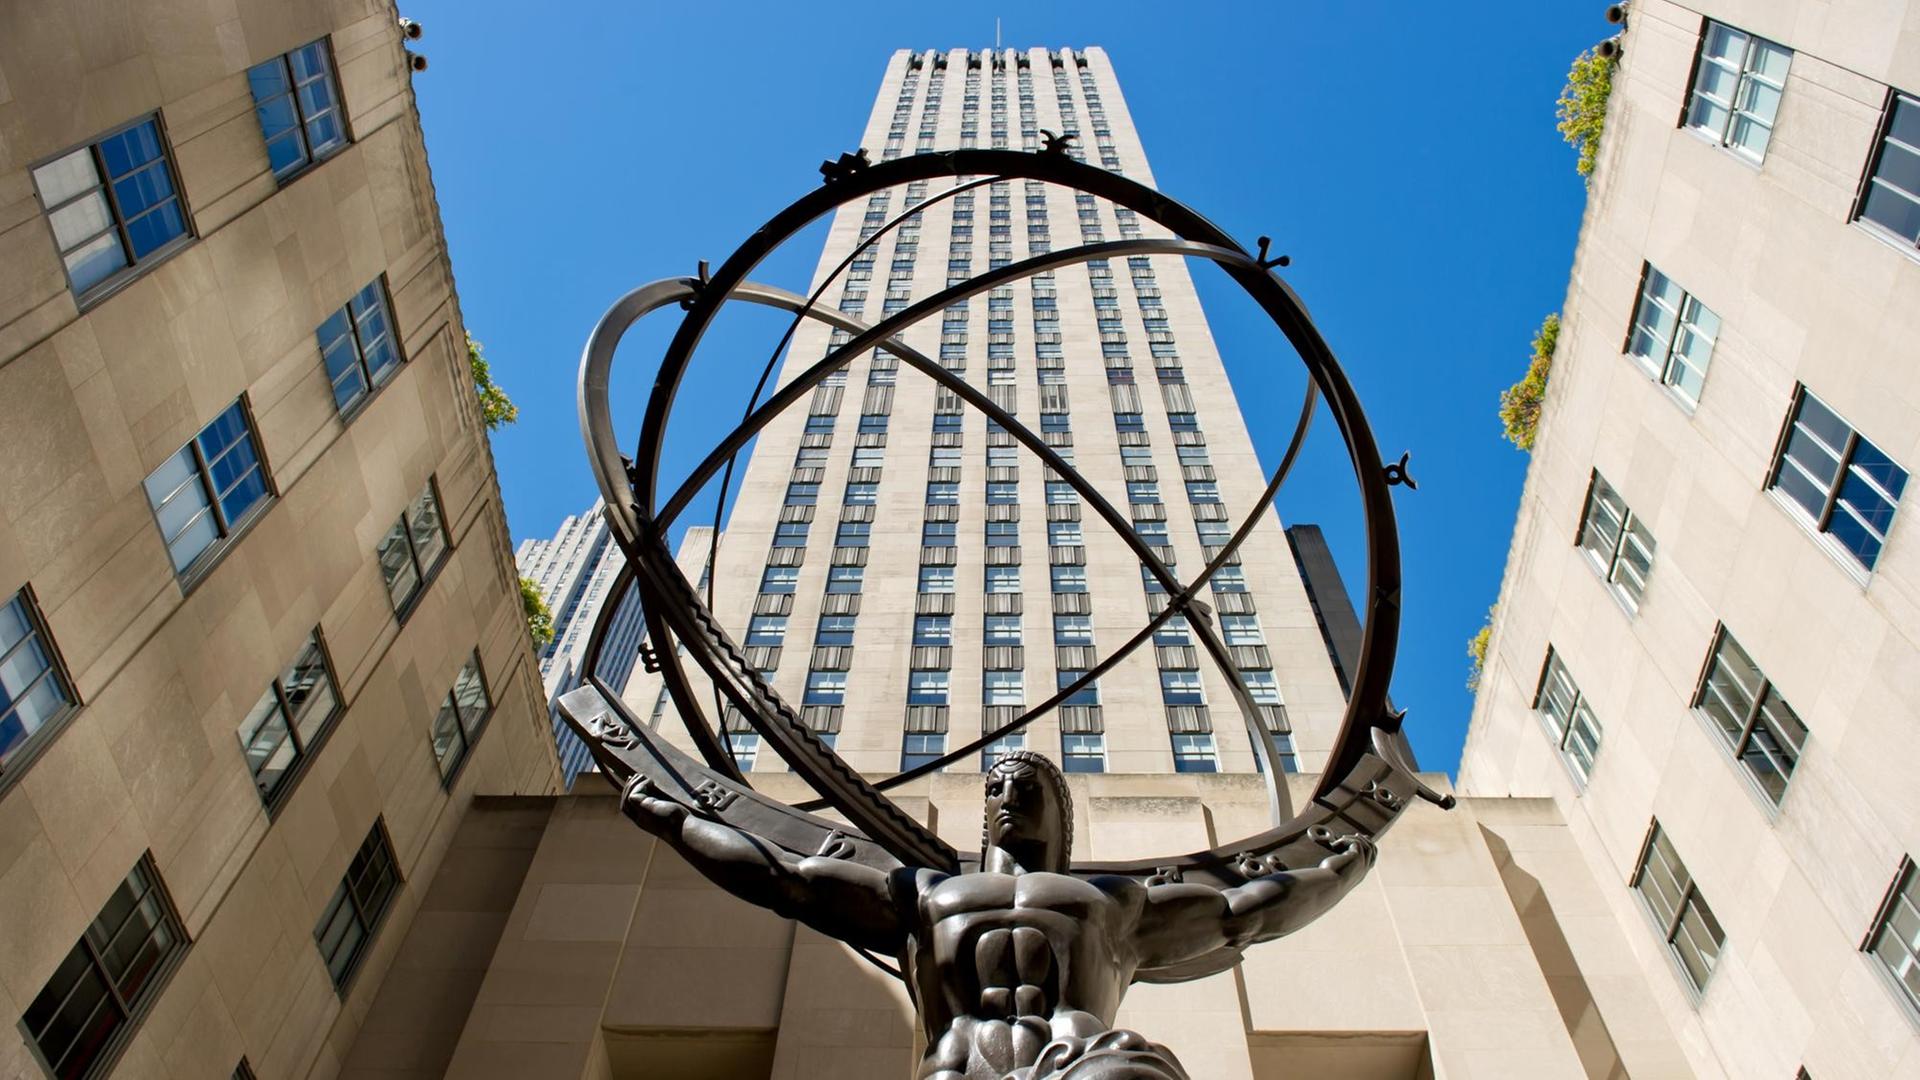 Die Atlas-Statue des Künstlers Lee Lawrie vor dem Rockefeller Center in New York, aufgenommen am 23.09.2012.